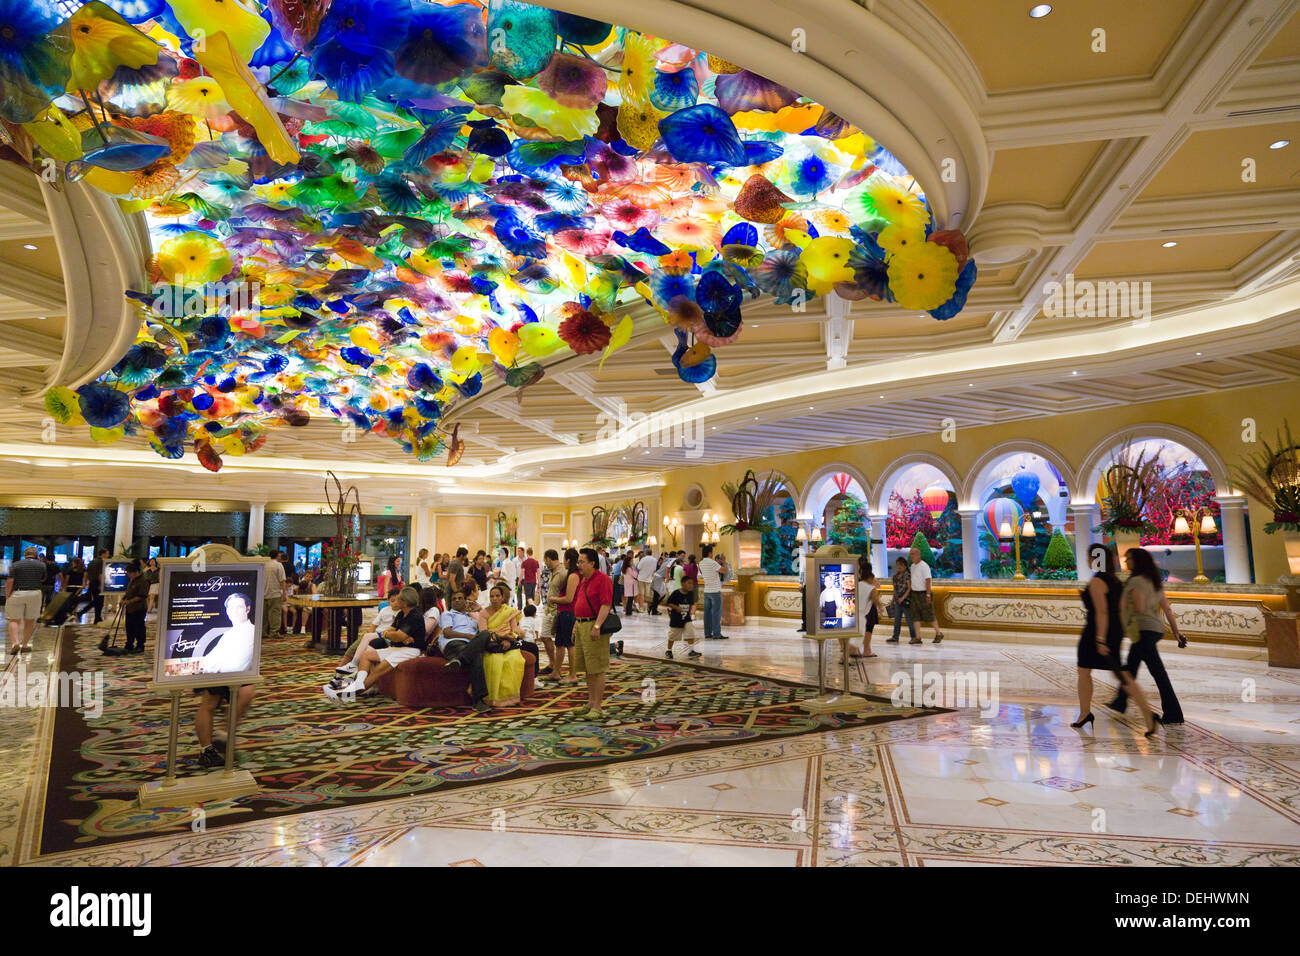 Dale Chihuly's 'Fiori di Como' Murano Glass ceiling in The Bellagio resort and casino lobby, Las Vegas, Nevada, USA. JMH5466 Stock Photo